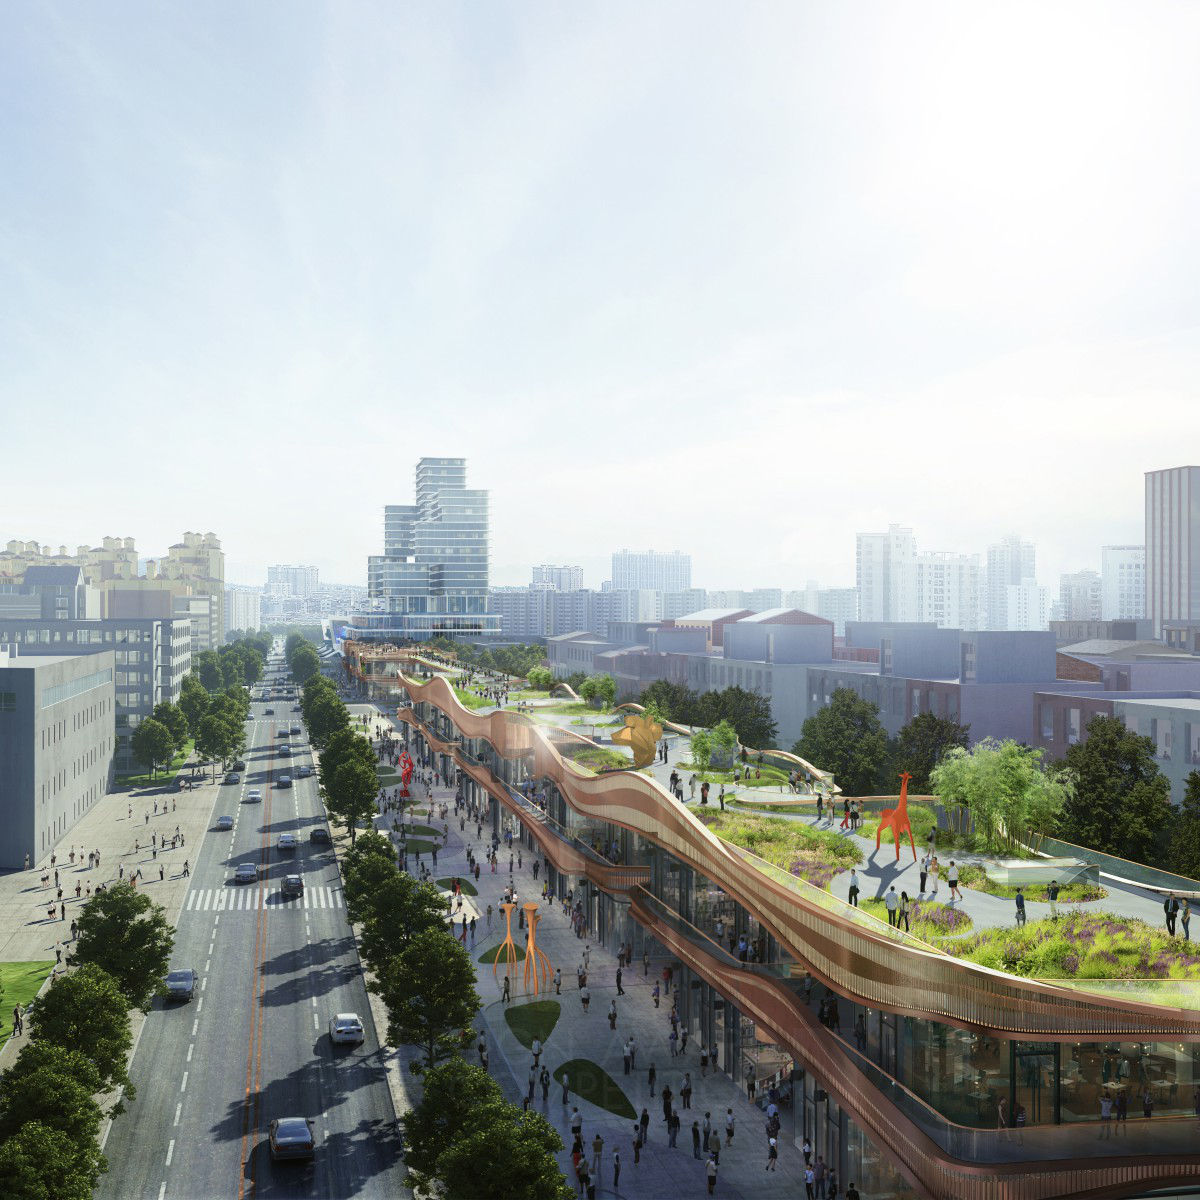 Urban Planning and Urban Design Chengdu Hyperlane Park Retail Architecture by Aedas